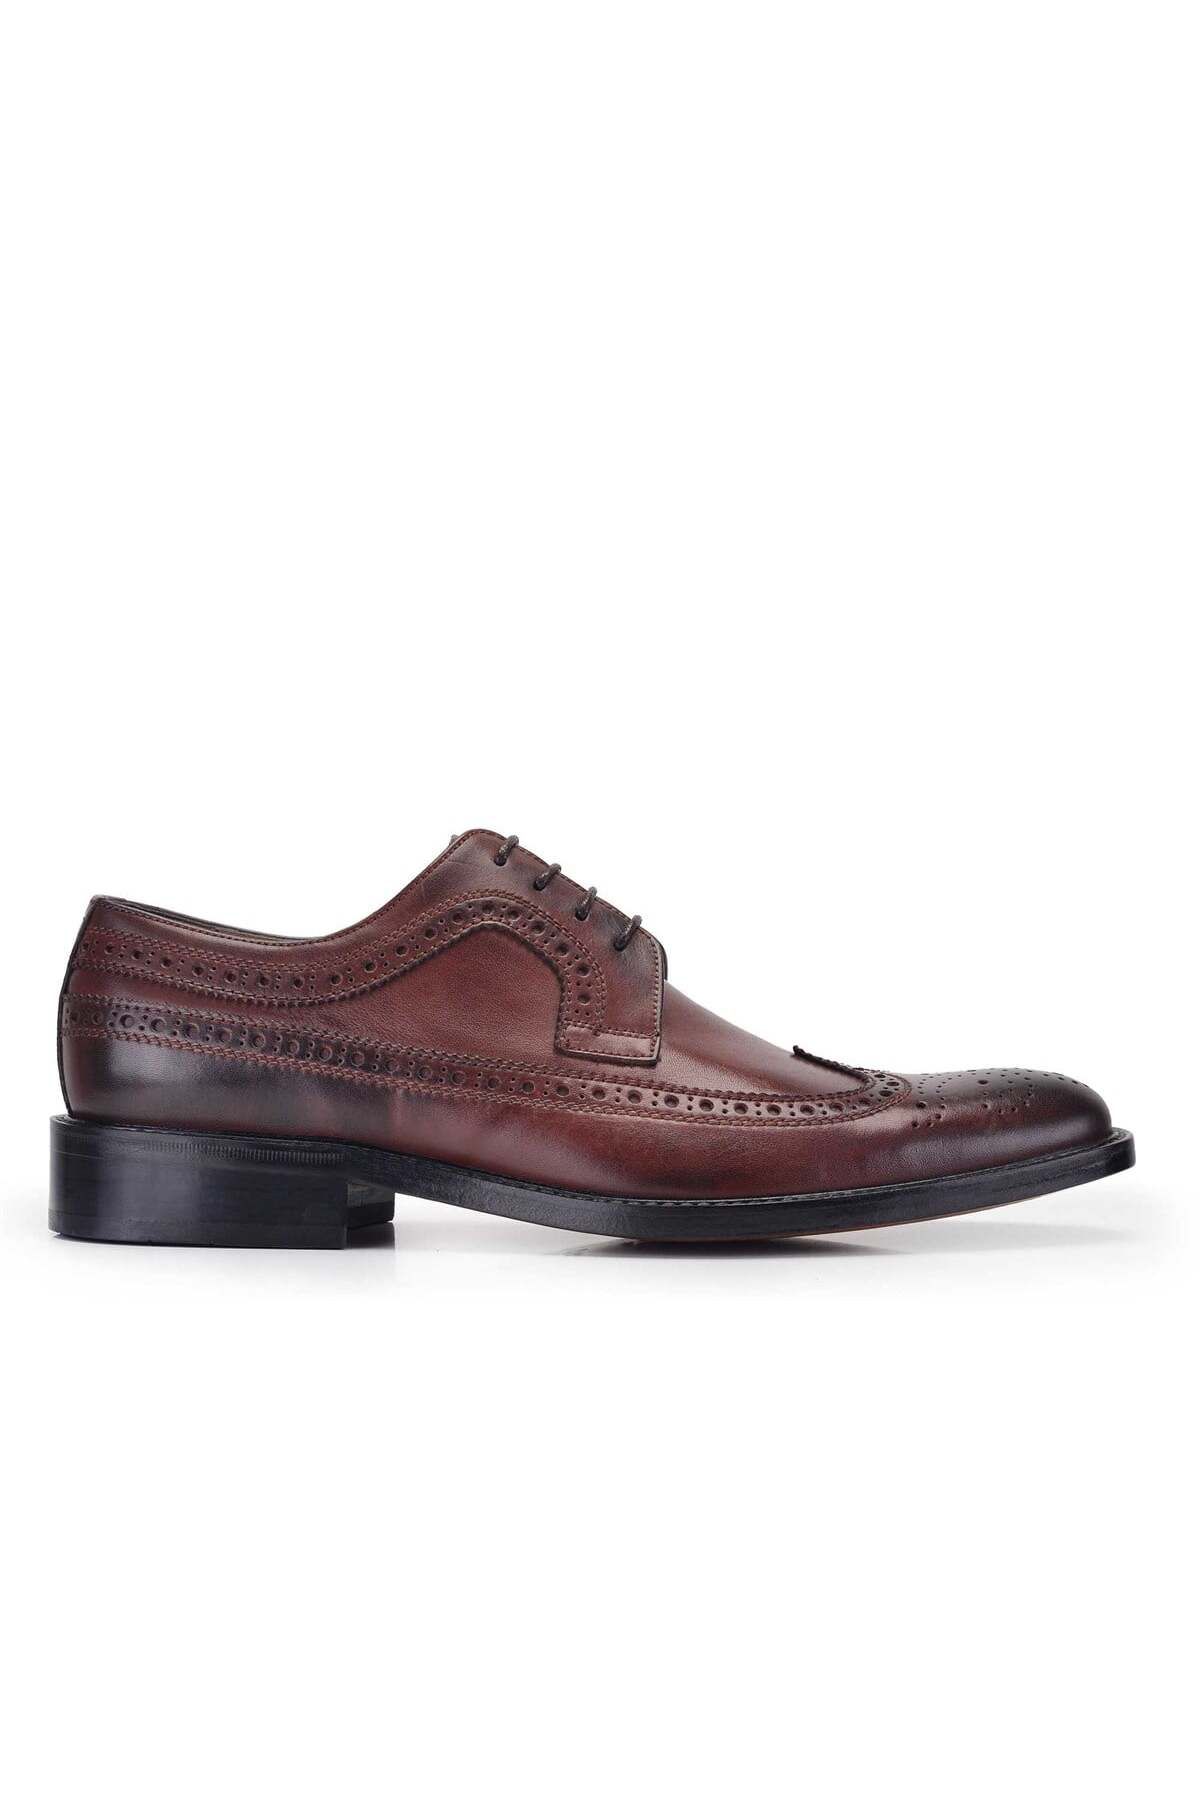 Nevzat Onay Hakiki Deri Kahverengi Klasik Bağcıklı Kösele Erkek Ayakkabı -8848-